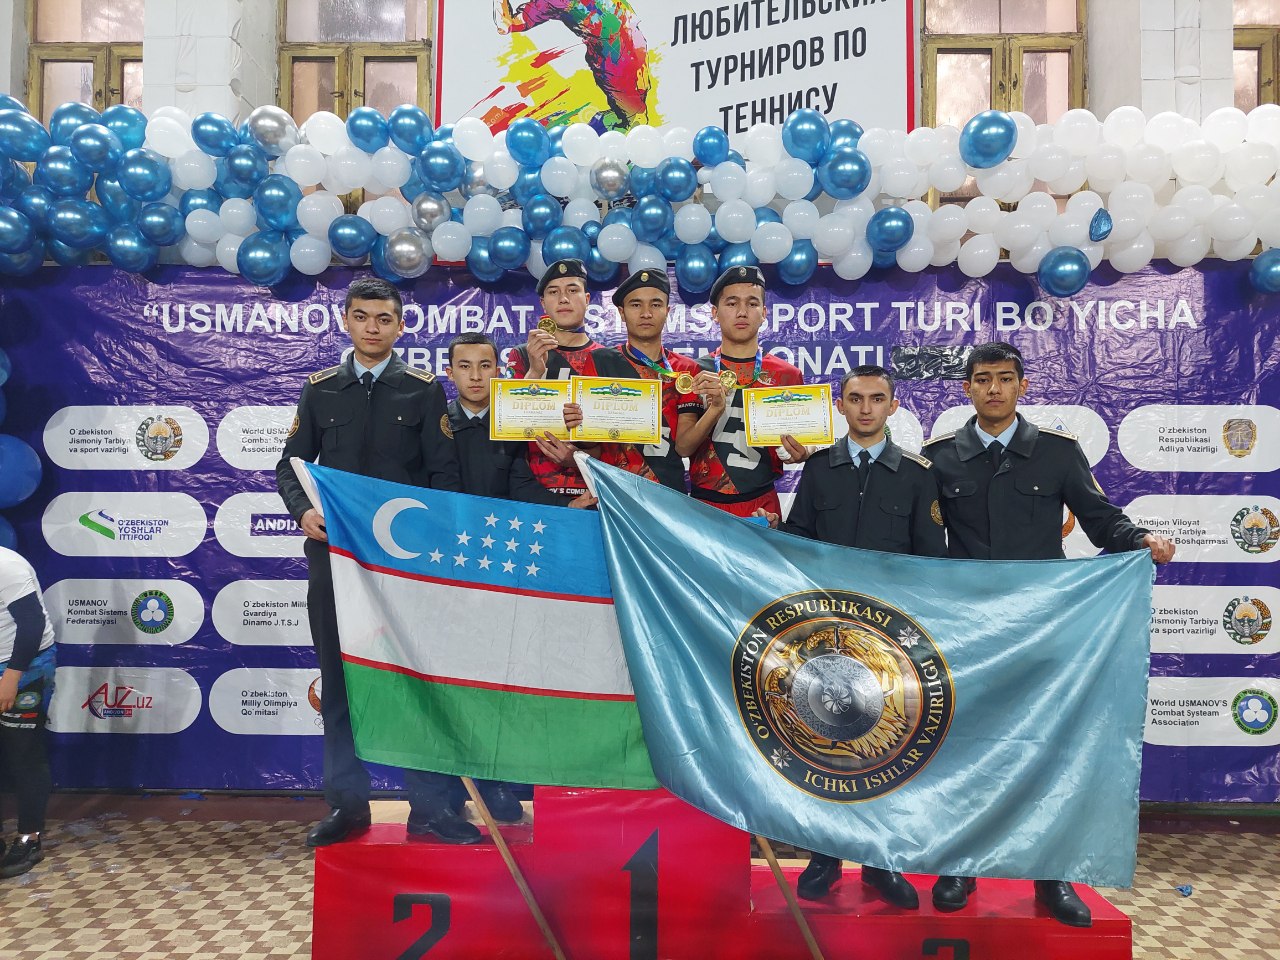 IIV Andijon akademik litseyi o‘quvchilari sportning “Usmanov Kombat Sistems” turi bo‘yicha…